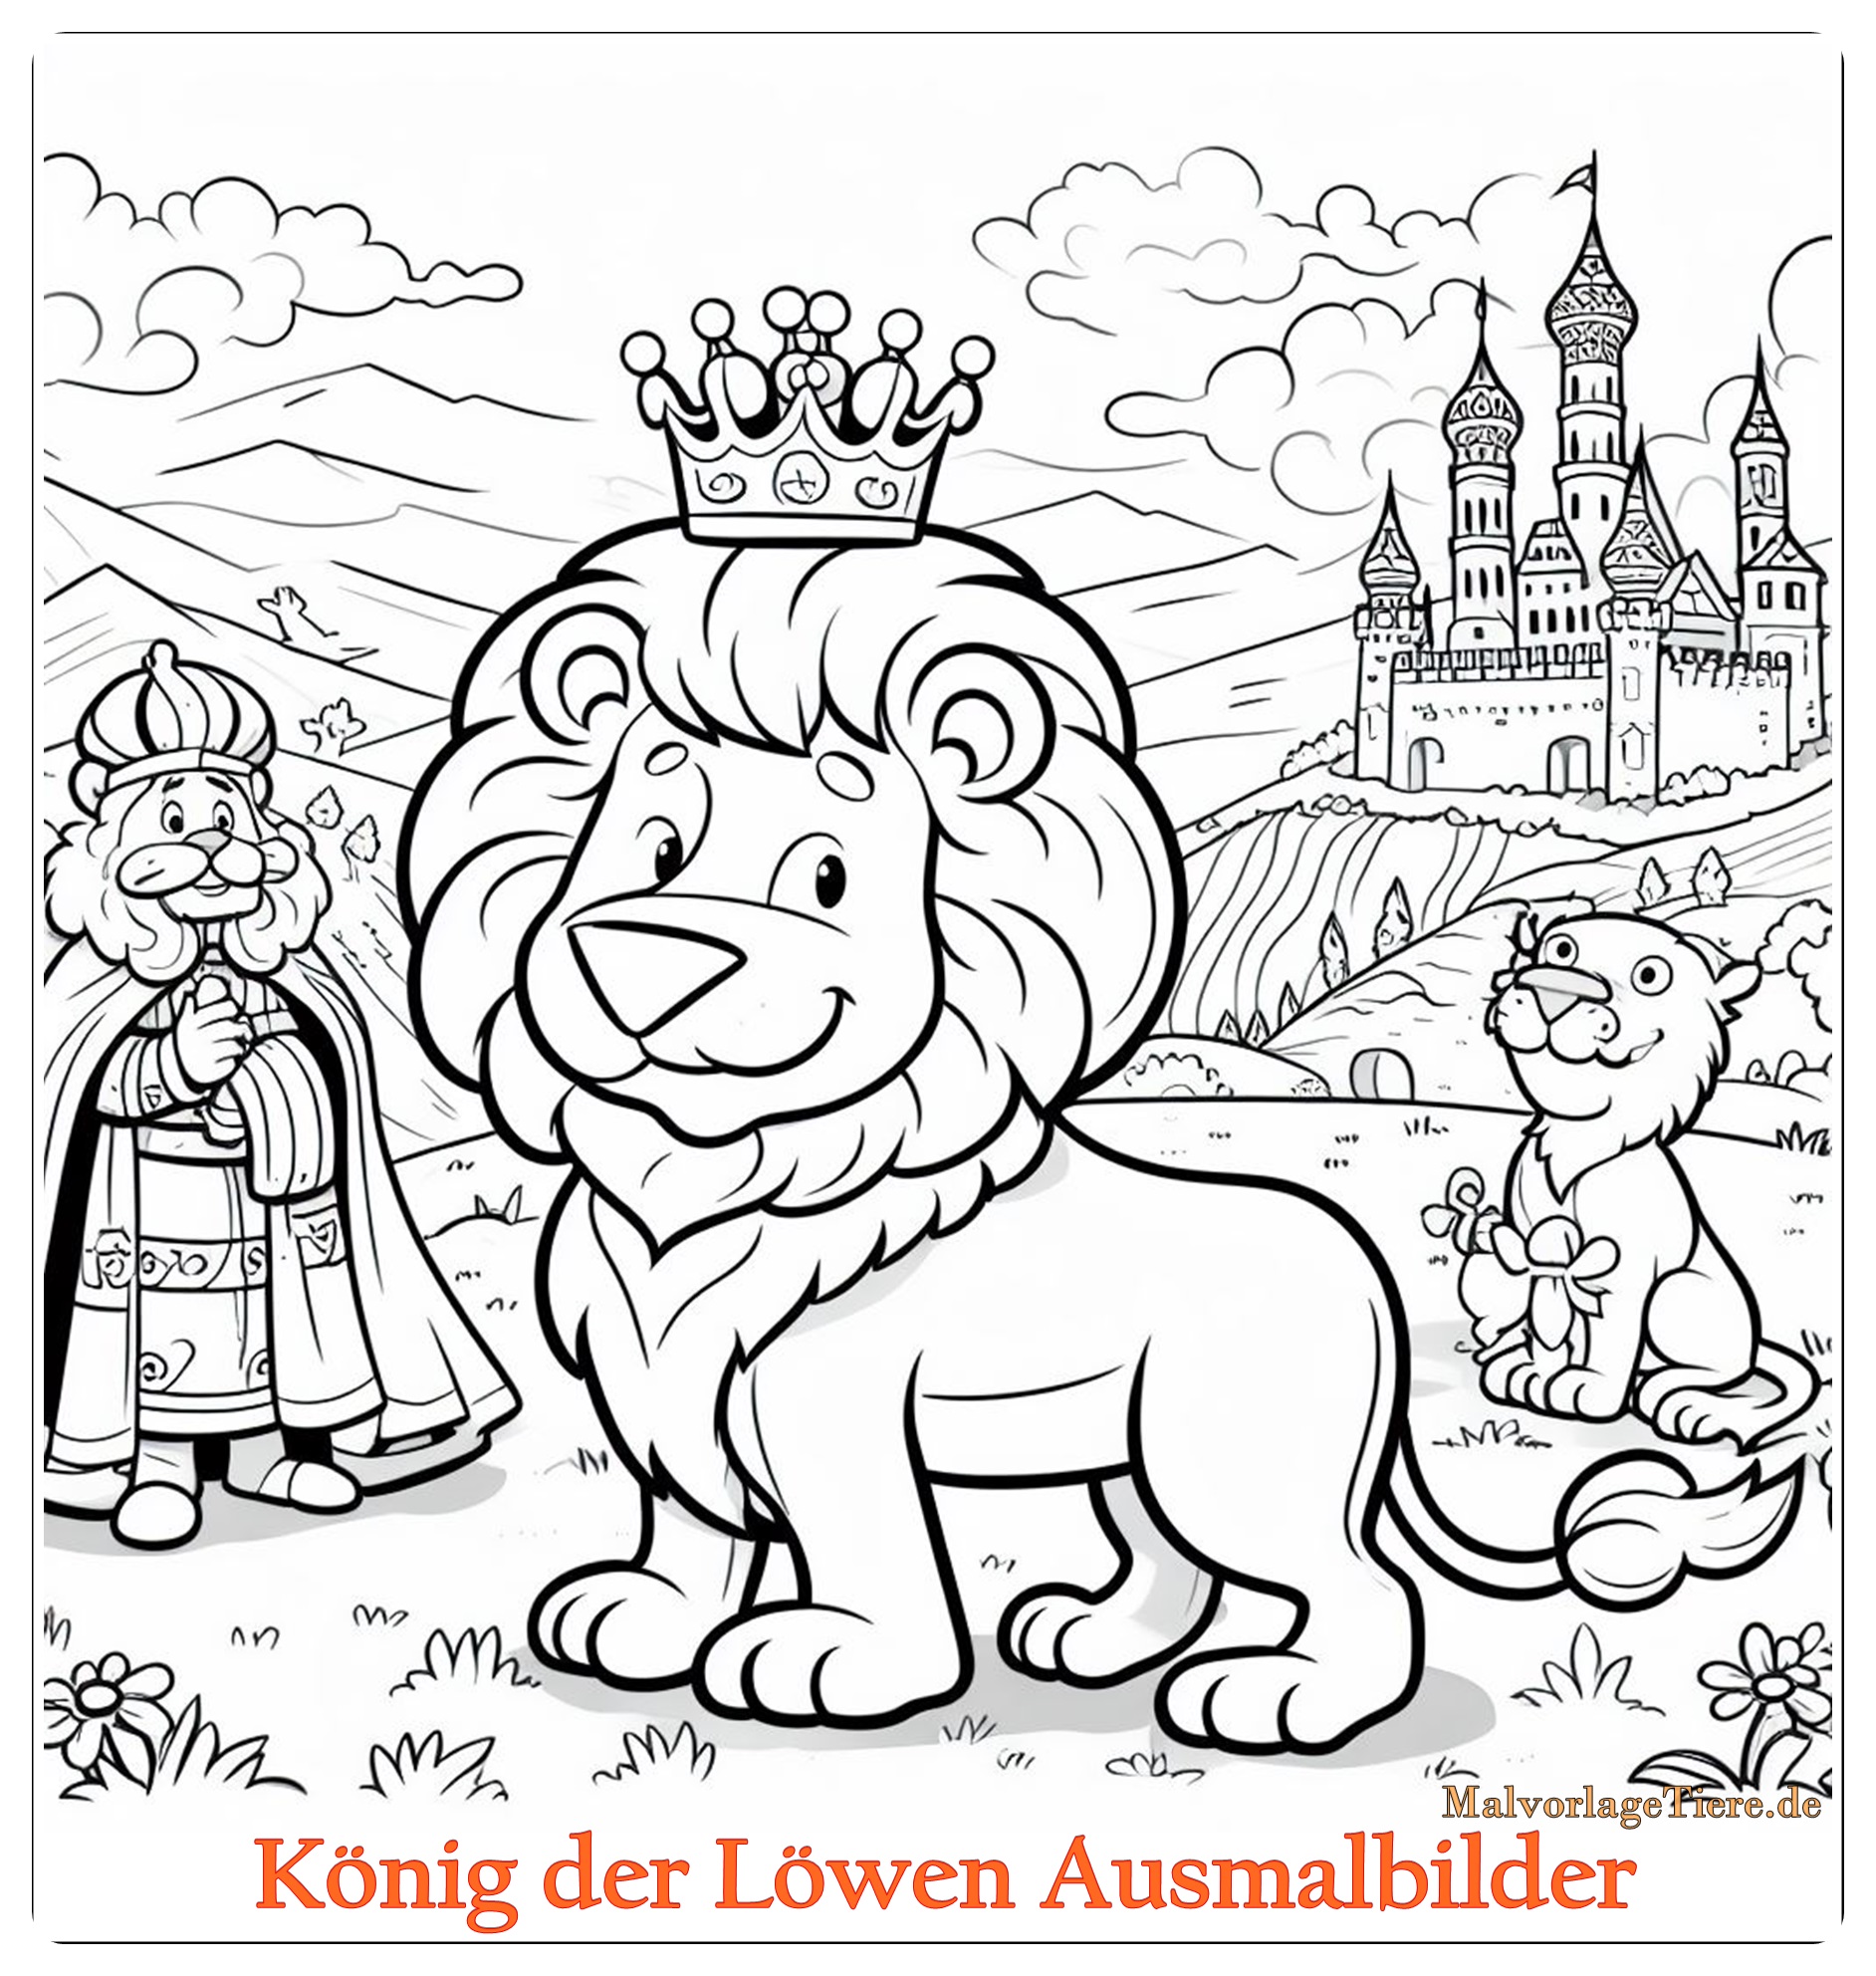 König der Löwen Ausmalbilder 01 by stadiongucker.de